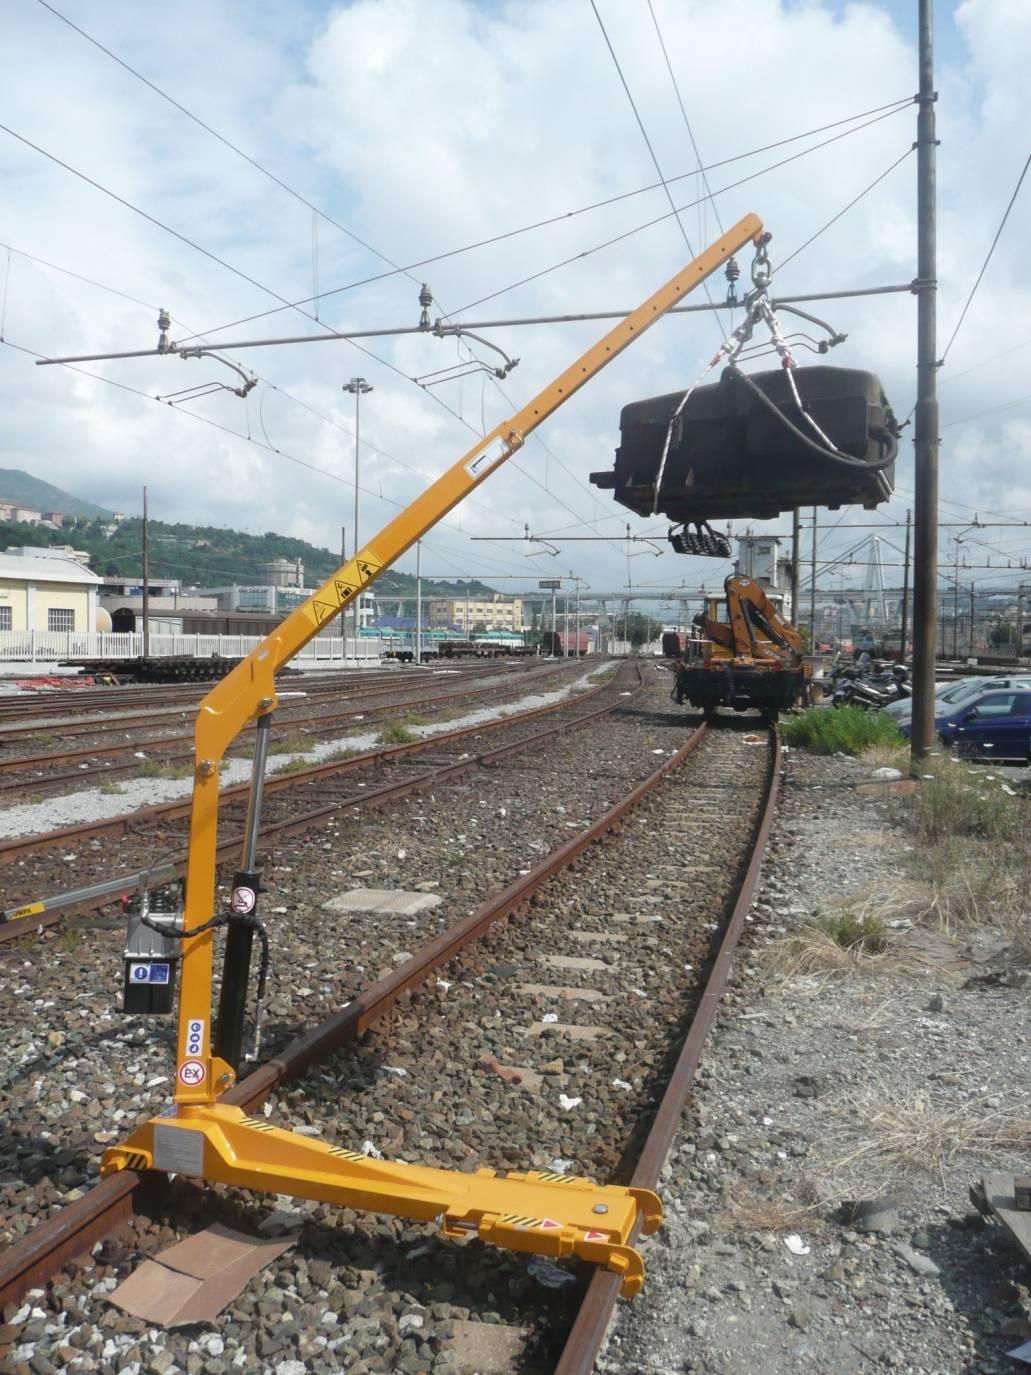 FS 08 1S E un sollevatore manuale uso gancio per operatori professionali del settore ferroviario.